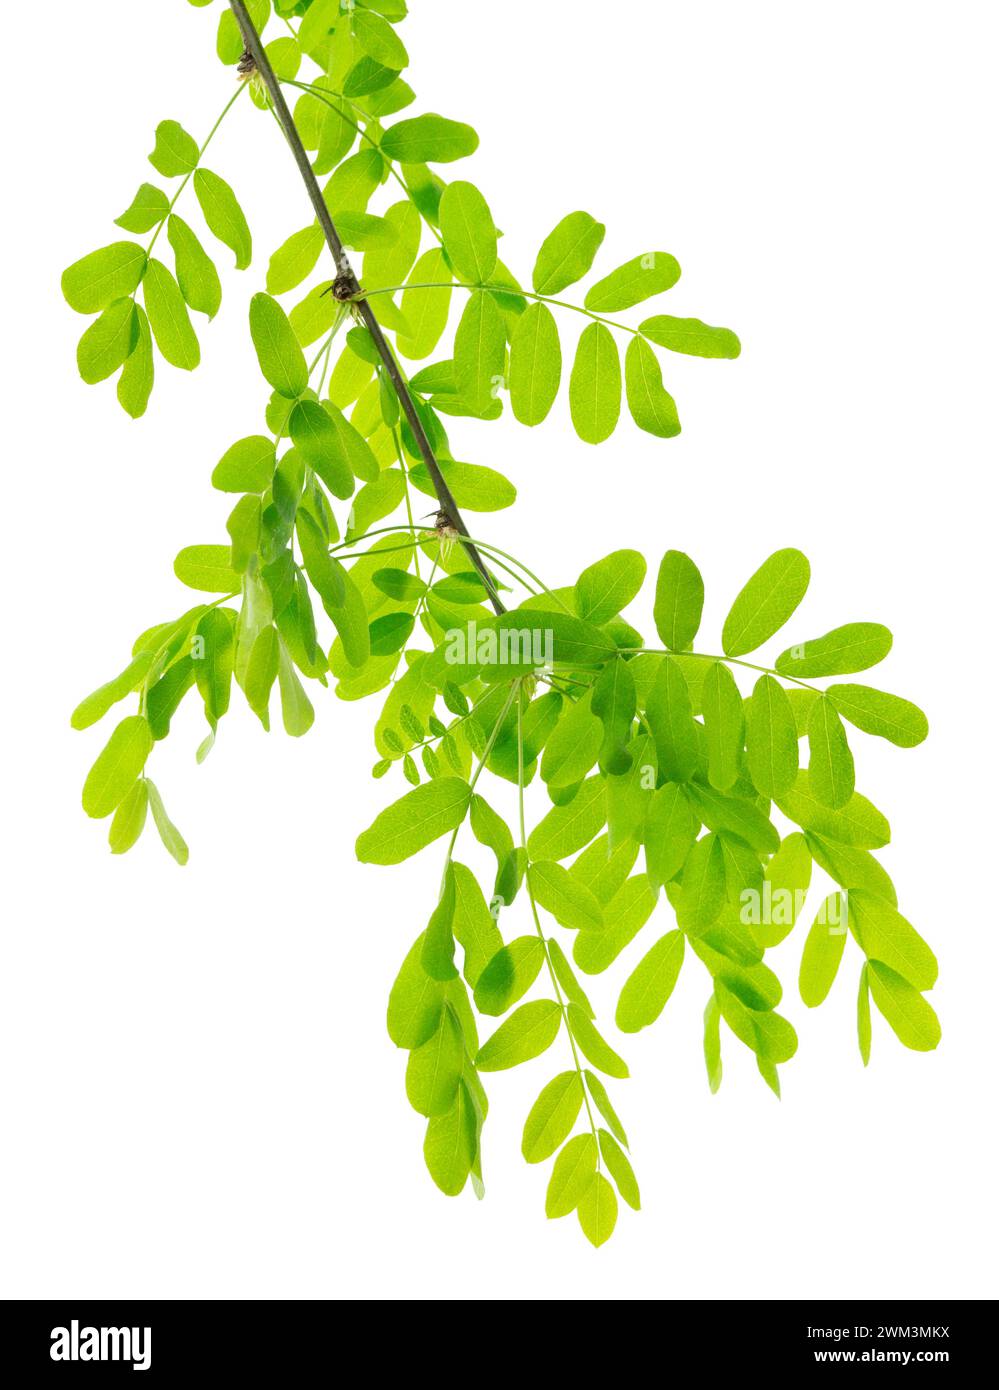 Ramas de Acacia con hojas verdes. Rama con hojas verdes jóvenes de primavera aisladas sobre fondo blanco. vegetación de primavera aislada. Foto de stock